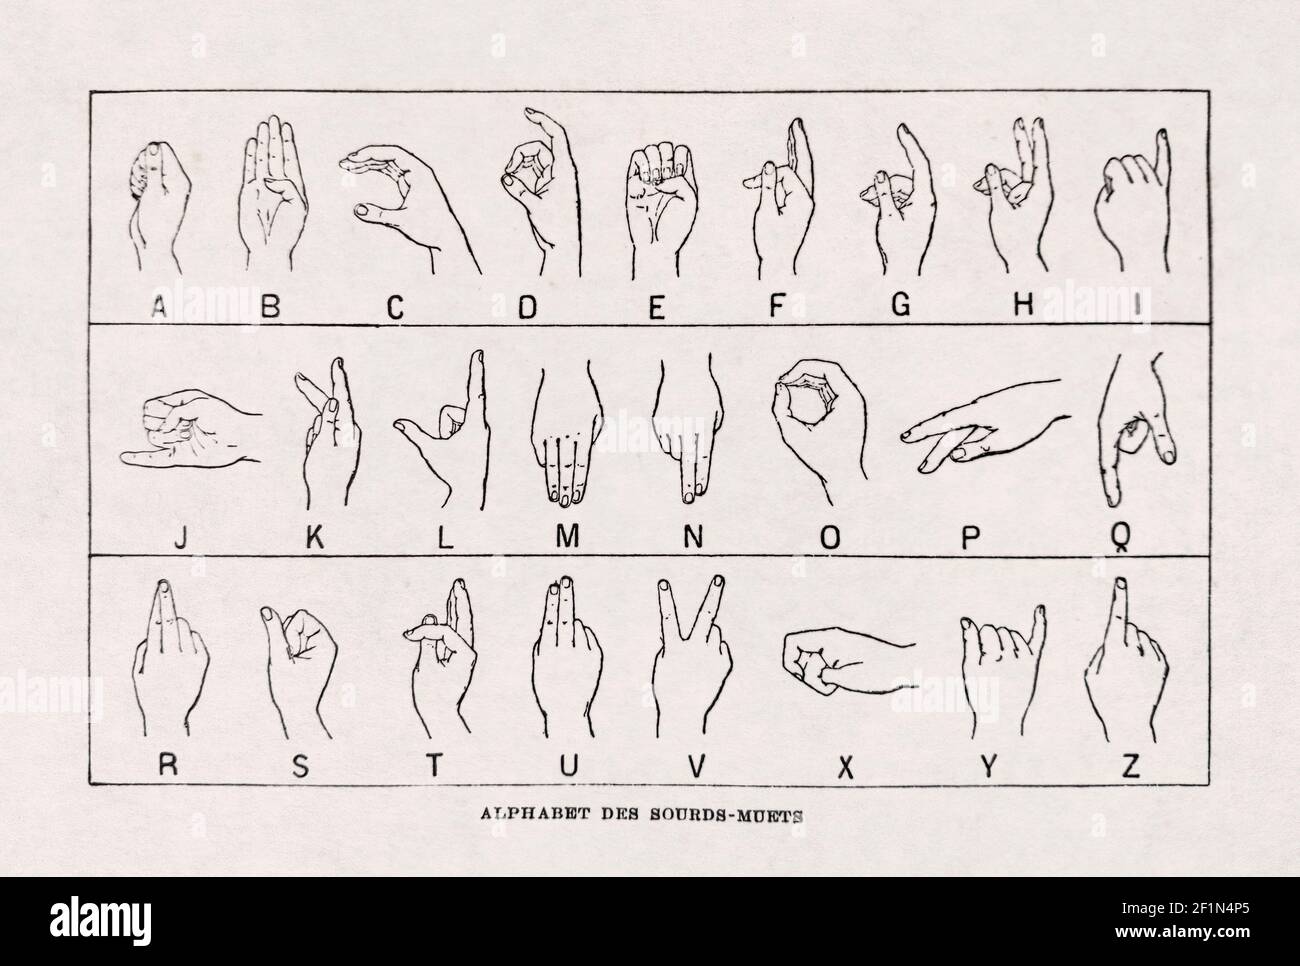 Ancienne illustration de la langue des signes française. Imprimé dans le dictionnaire 'Dictionnaire complet illustraet' par l'éditeur Larousse en 1889. Banque D'Images